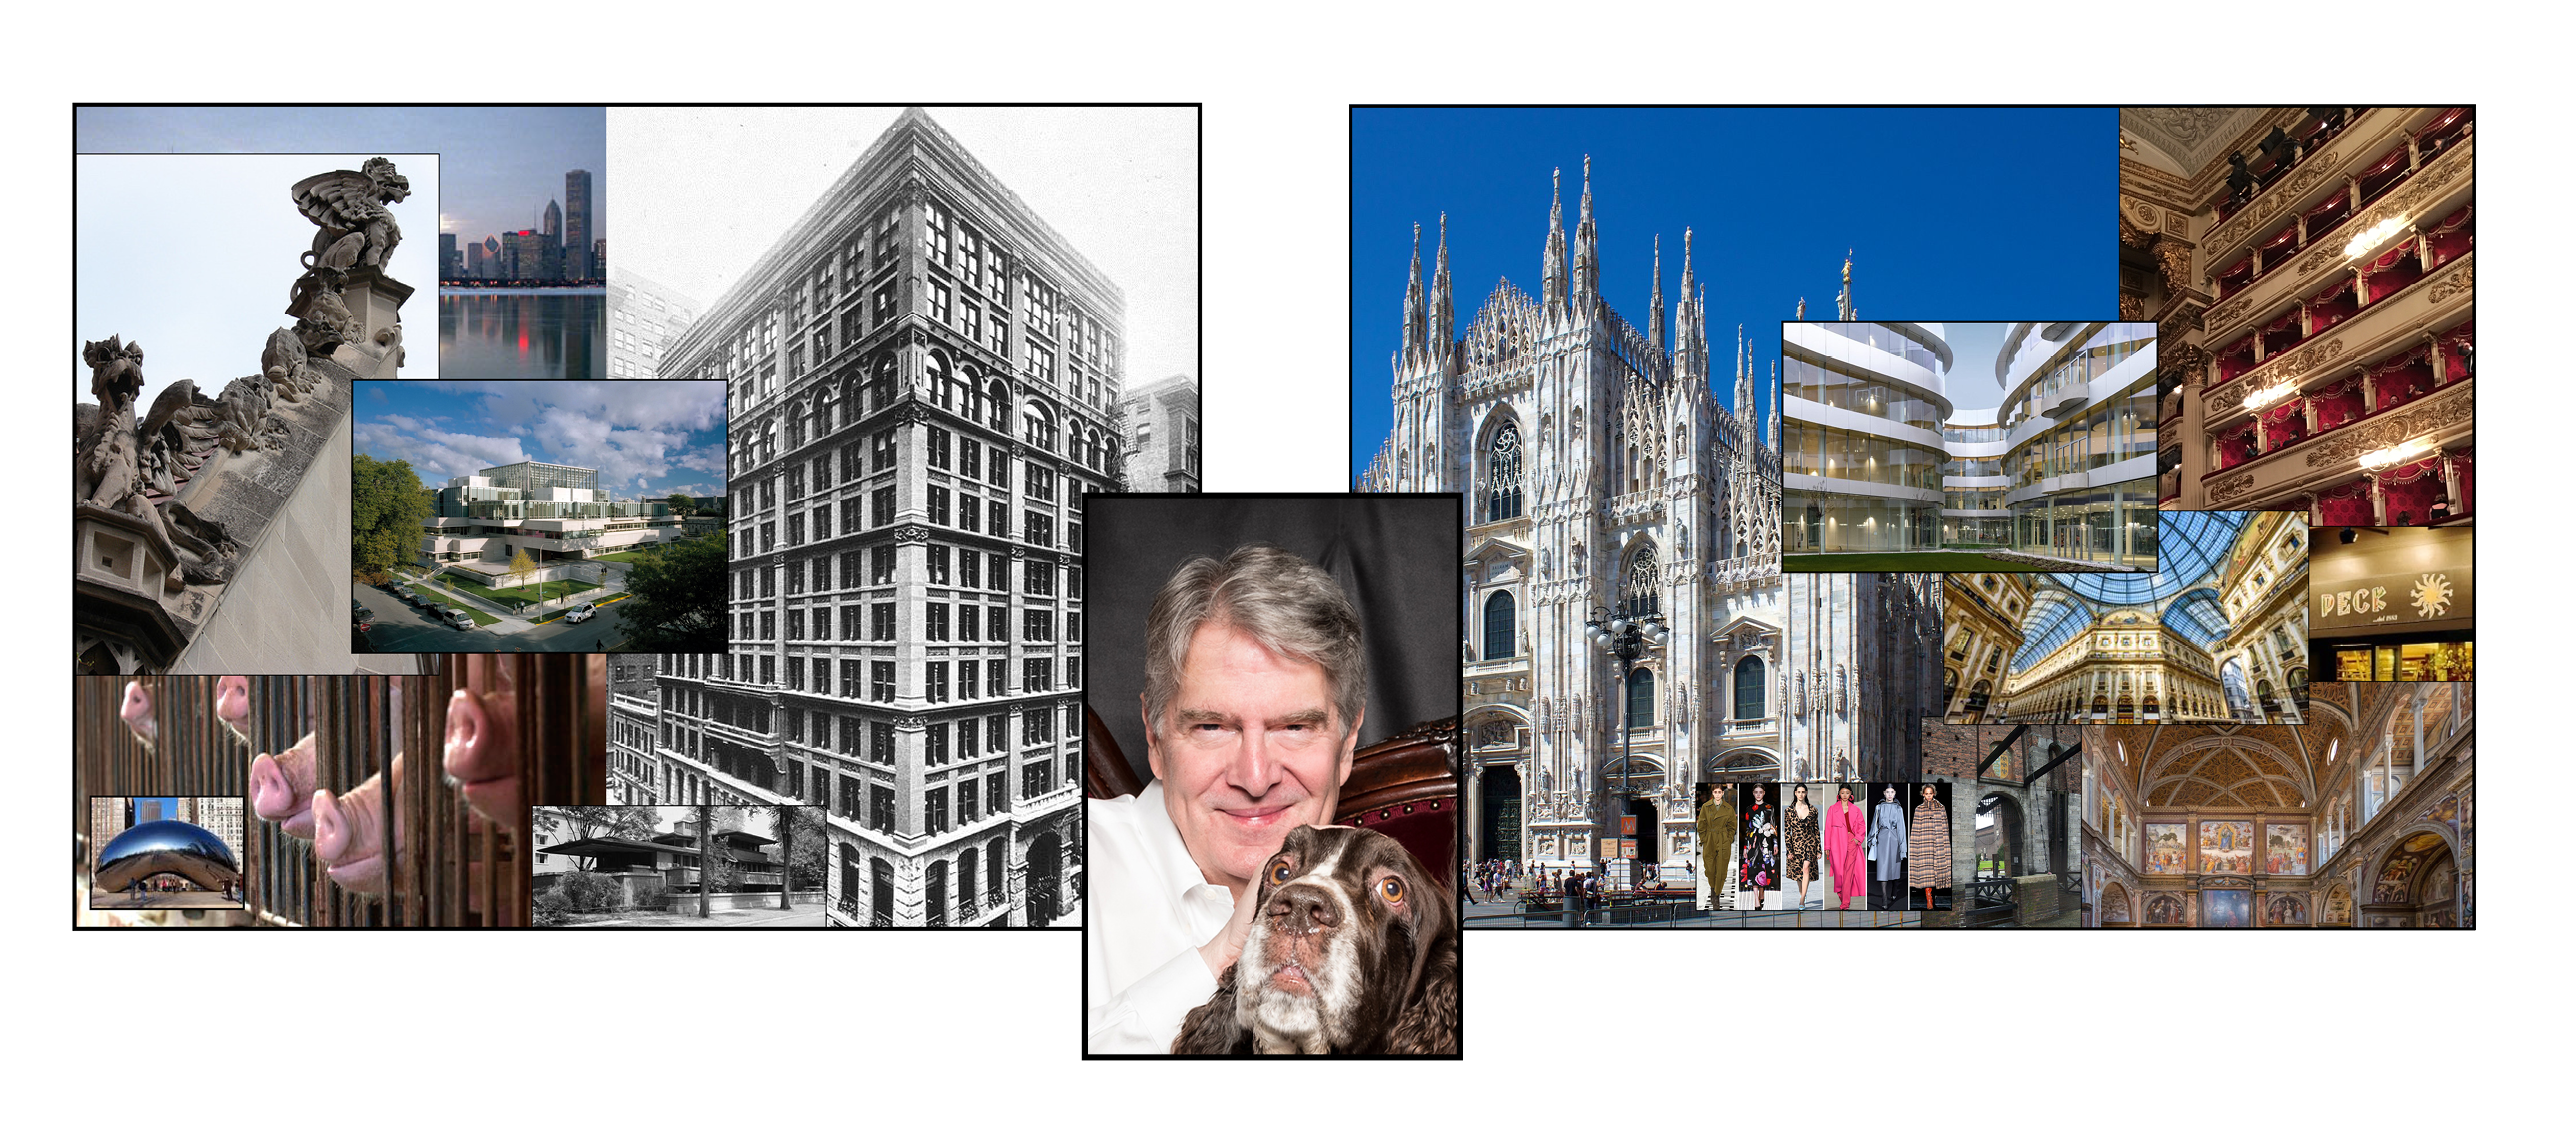 Chicago, Milan, Burt Compilation Image